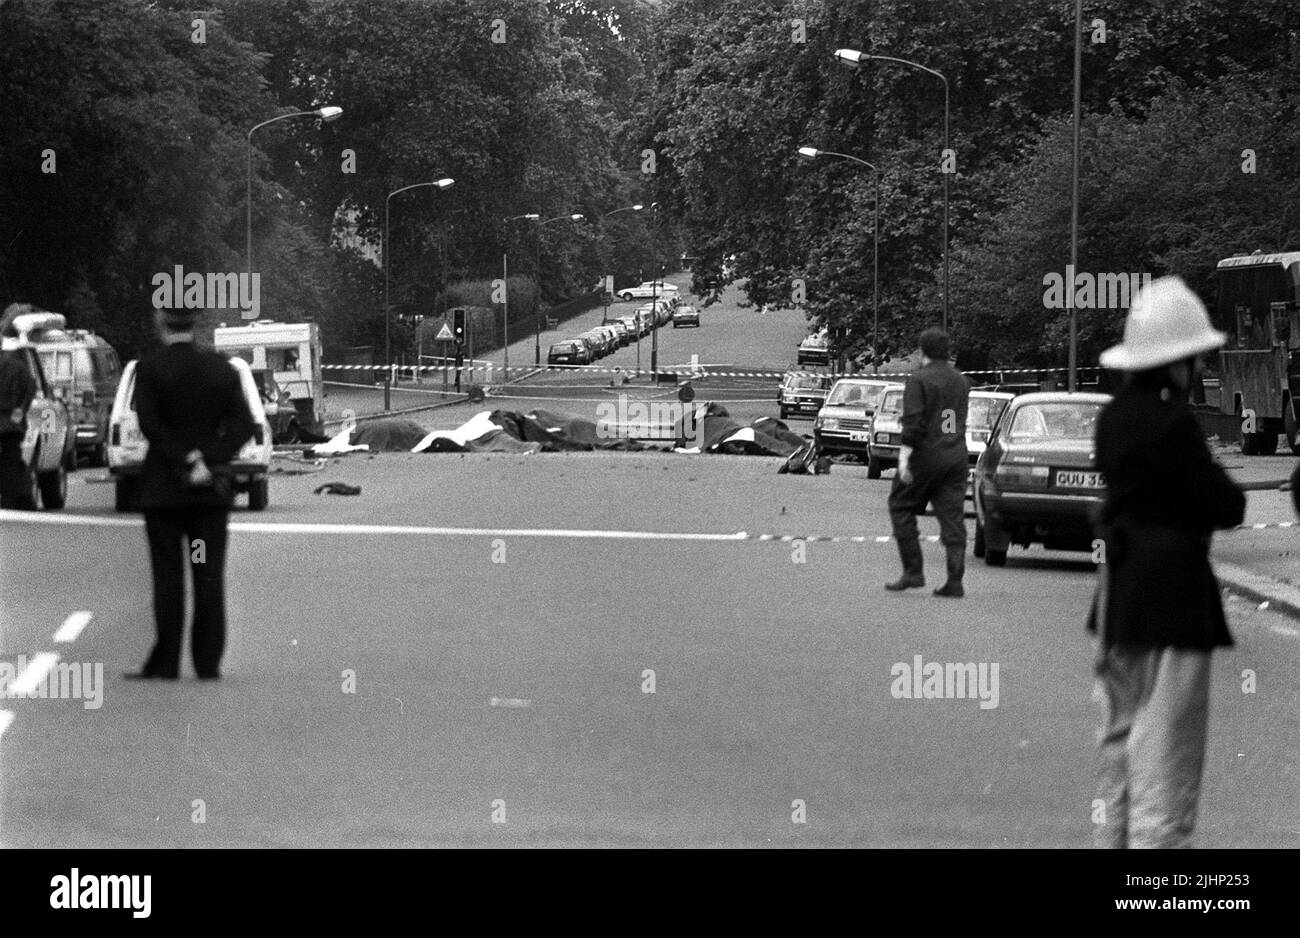 Photo du dossier datée du 20/7/1982 de chevaux morts sont couverts à la suite d'un attentat à la bombe automobile près des casernes de Hyde Park. Les familles de soldats tués dans les attentats à la bombe de Hyde Park et Regent's Park IRA ont dit que leurs souffrances restent indiminuées 40 ans plus tard. Au total, 11 militaires sont morts dans les deux attaques qui se sont produites à quelques heures l'une de l'autre à Londres sur 20 juillet 1982. Date de publication : mercredi 20 juillet 2022. Banque D'Images